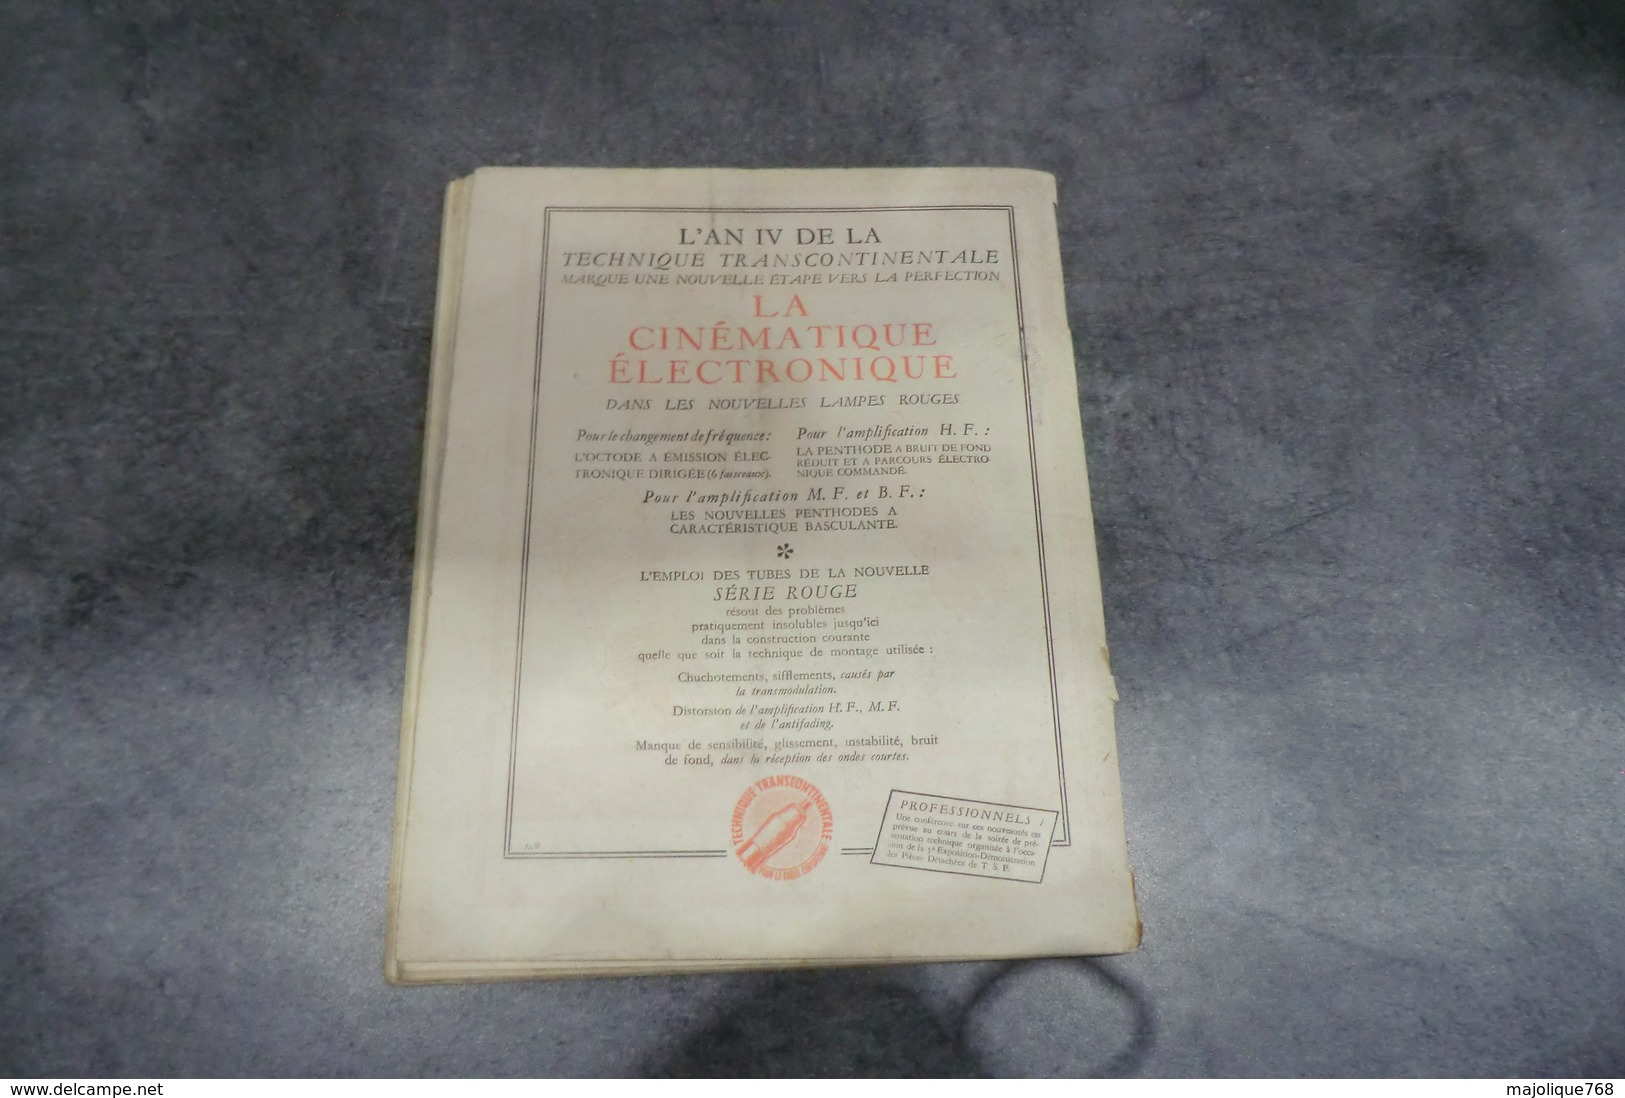 Revue Toute La Radio Par Eugène Aisberg - N°49 De Février 1938 - - Bauteile